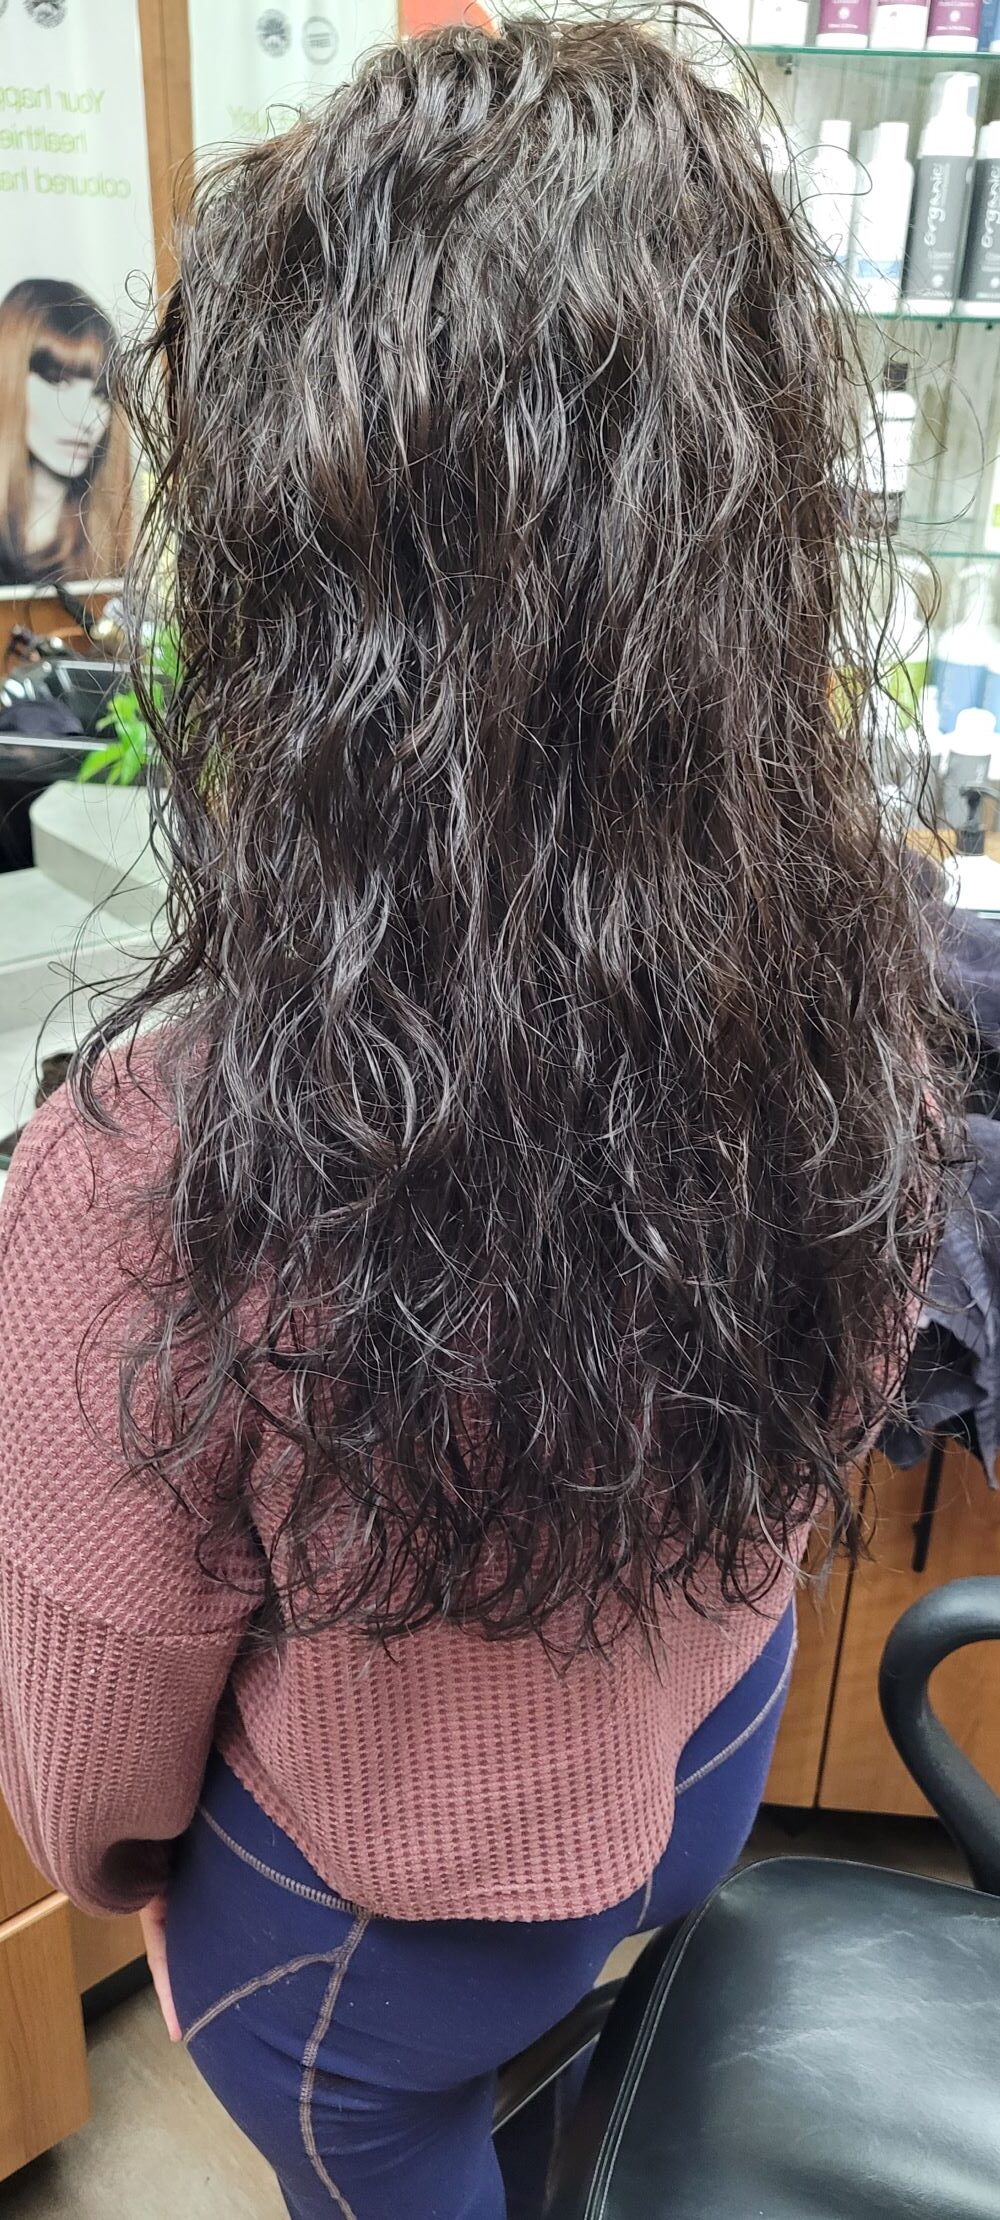 Long Naturally Curly Hair